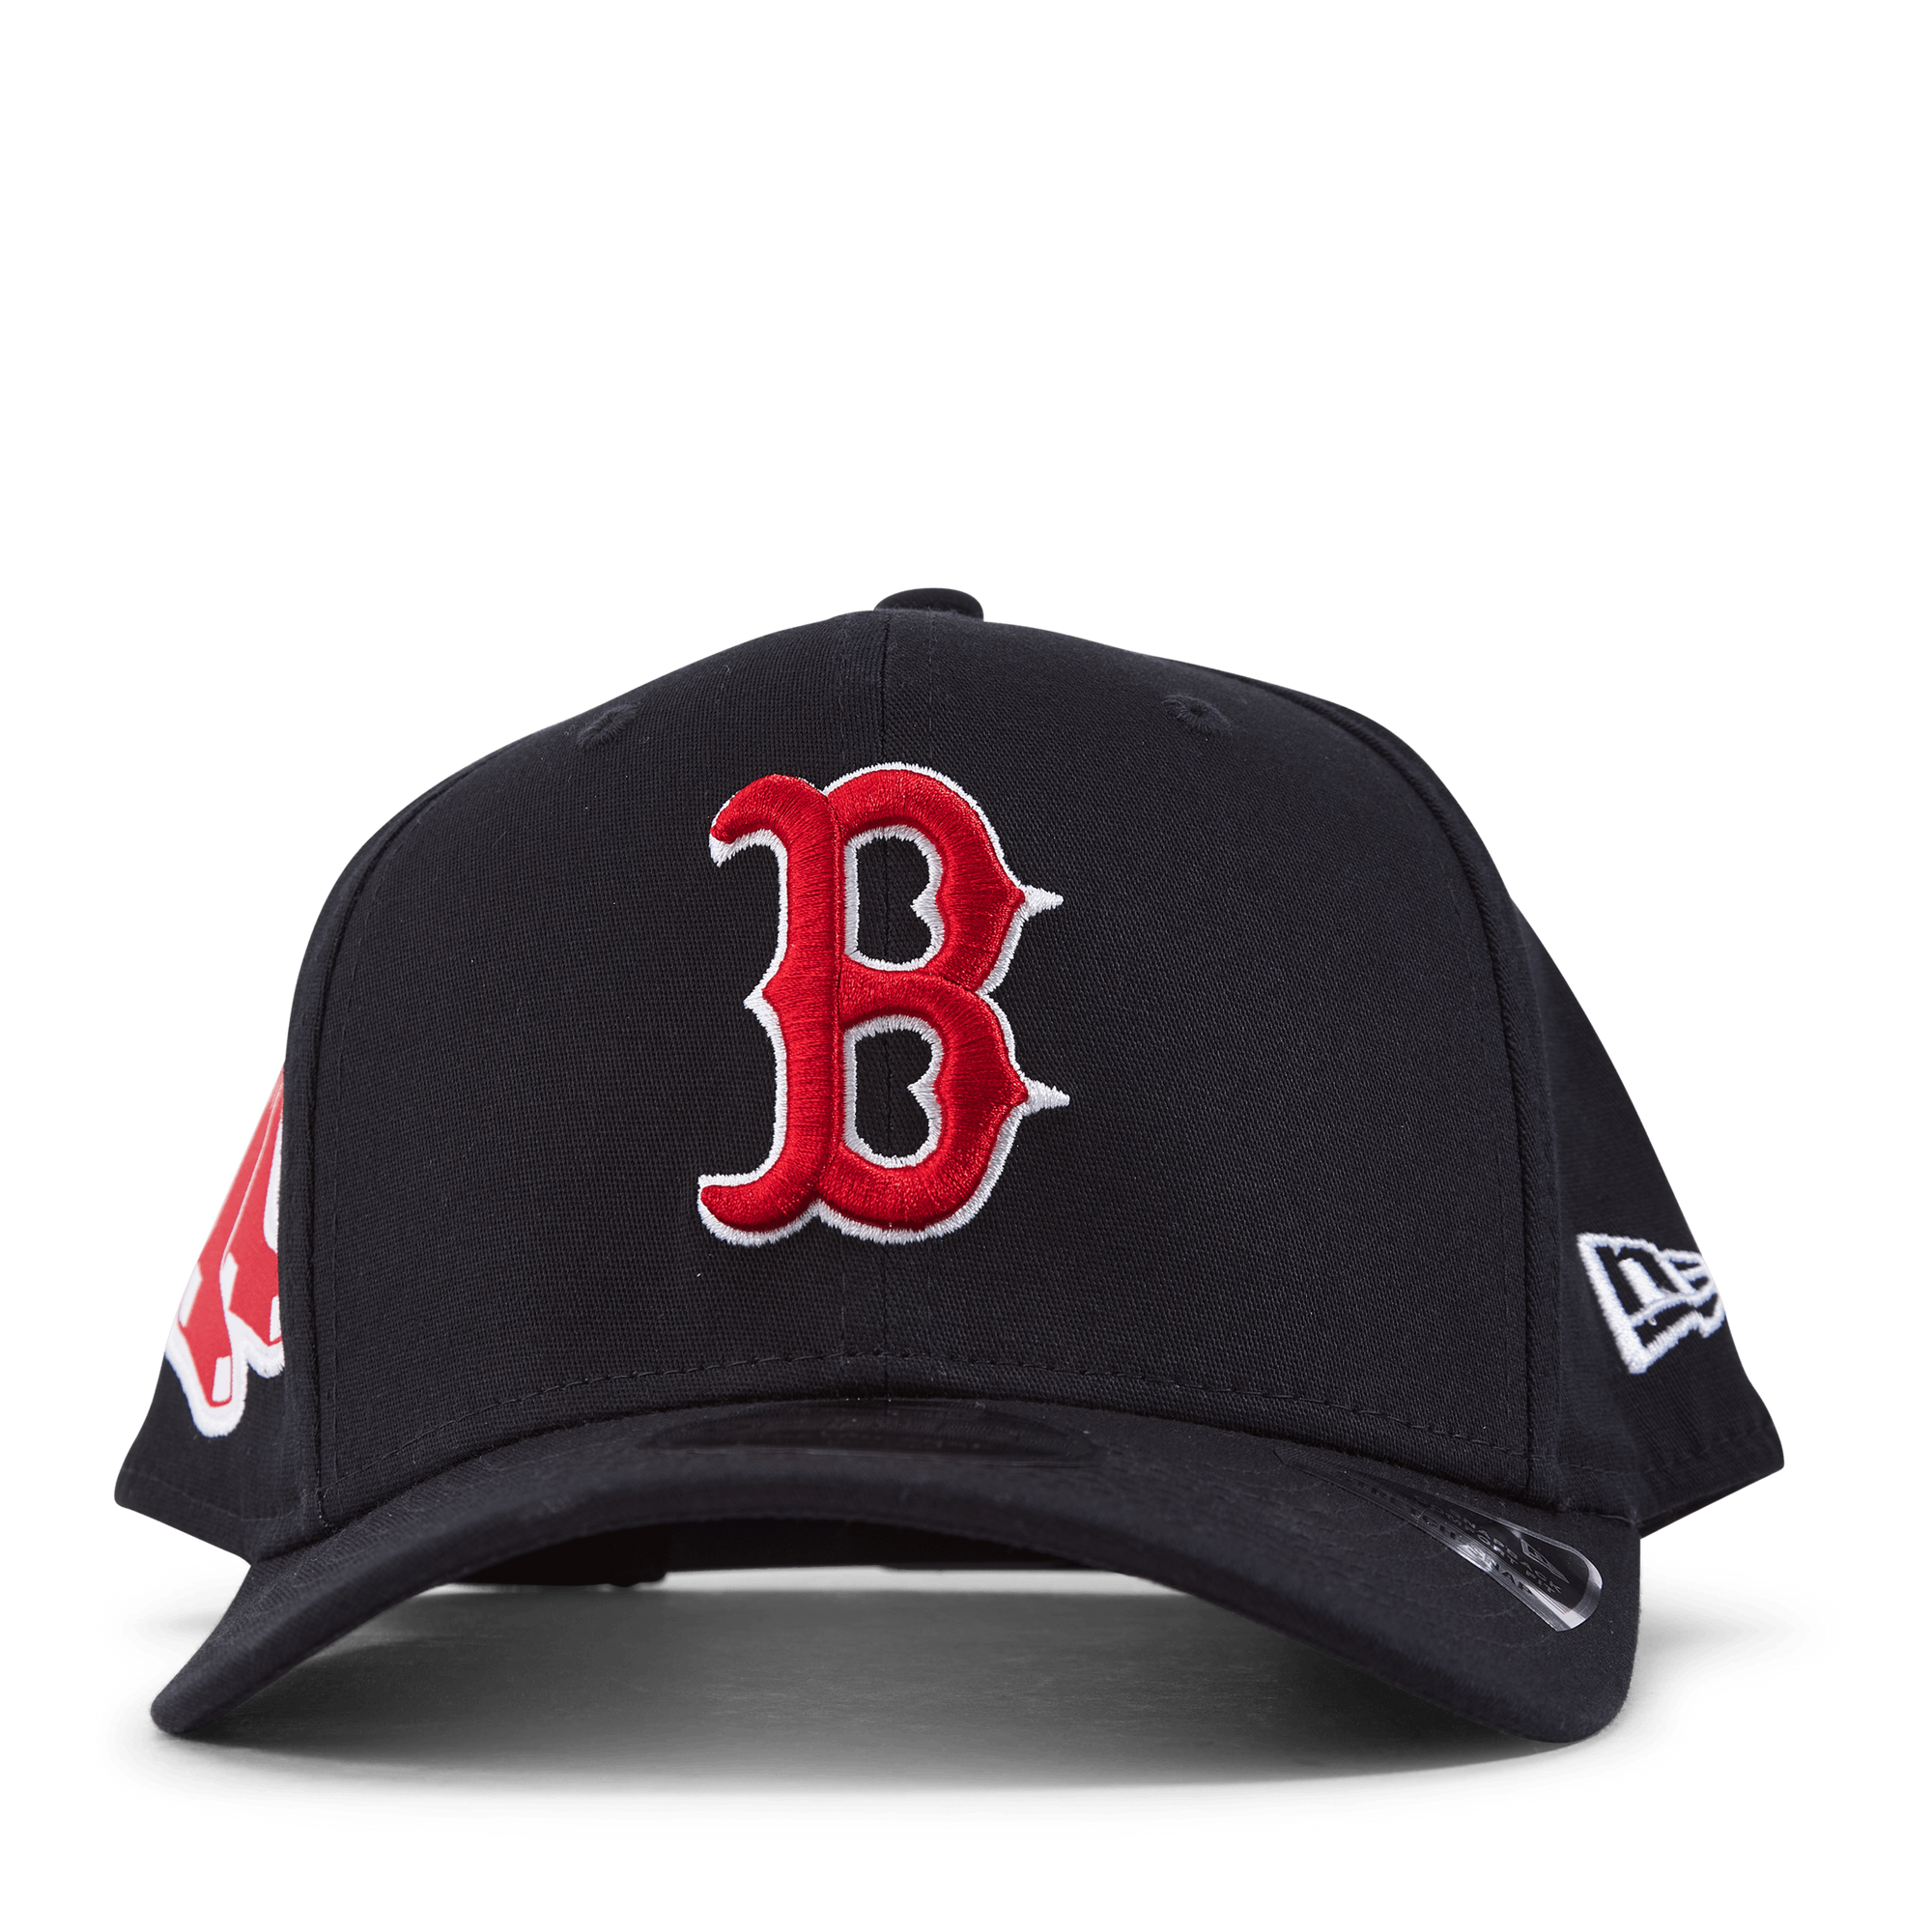 MLB LOGO 950 STSP BOSTON RED SOX